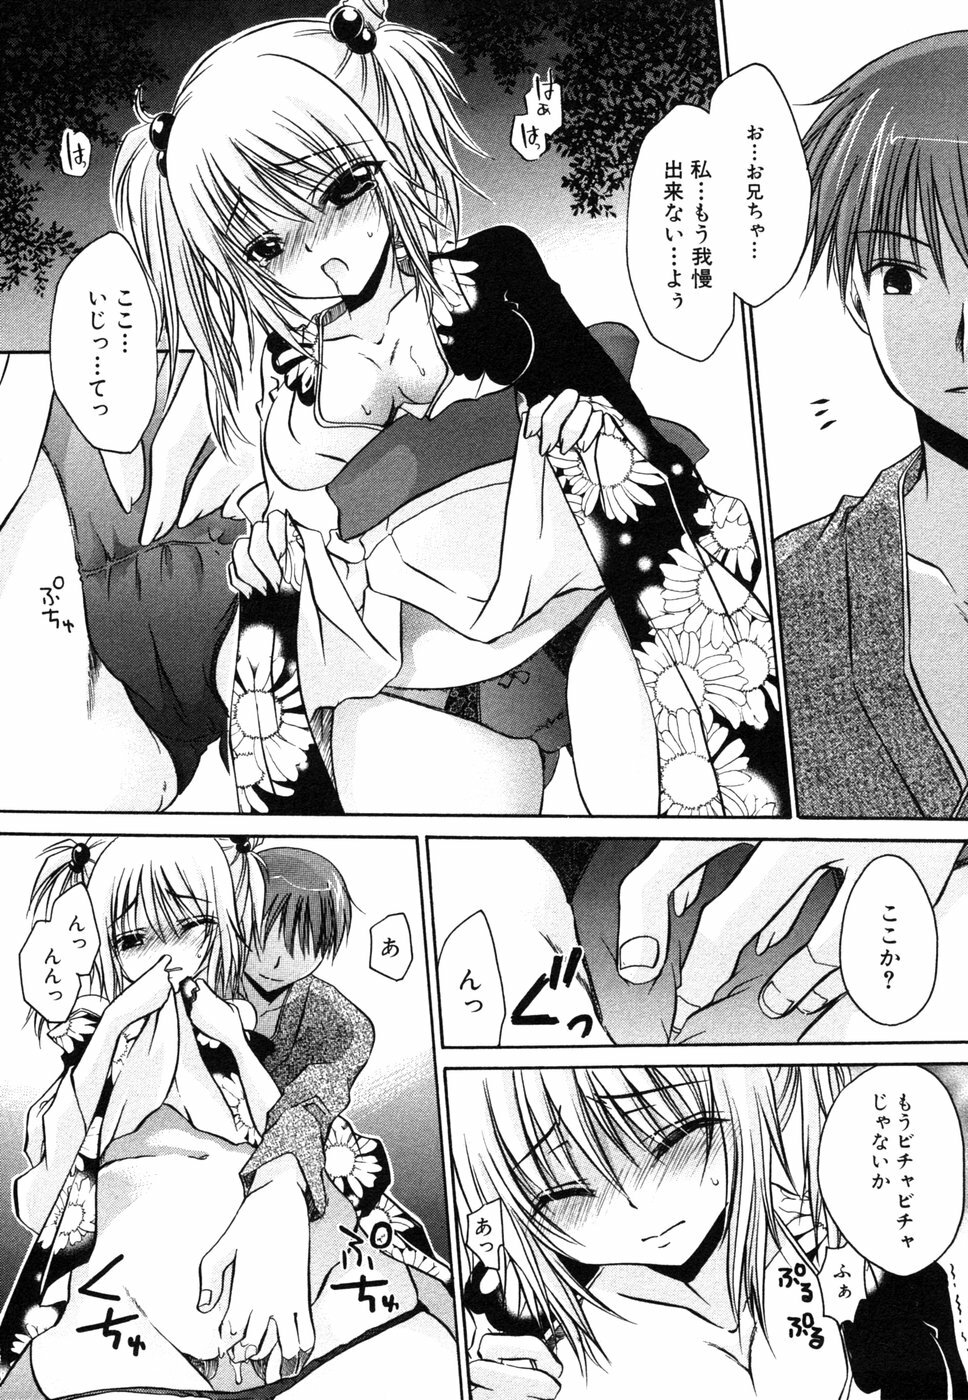 [Anthology] Himitsu no Tobira 5 Kinshin Ai Anthology (The Secret Door) page 14 full